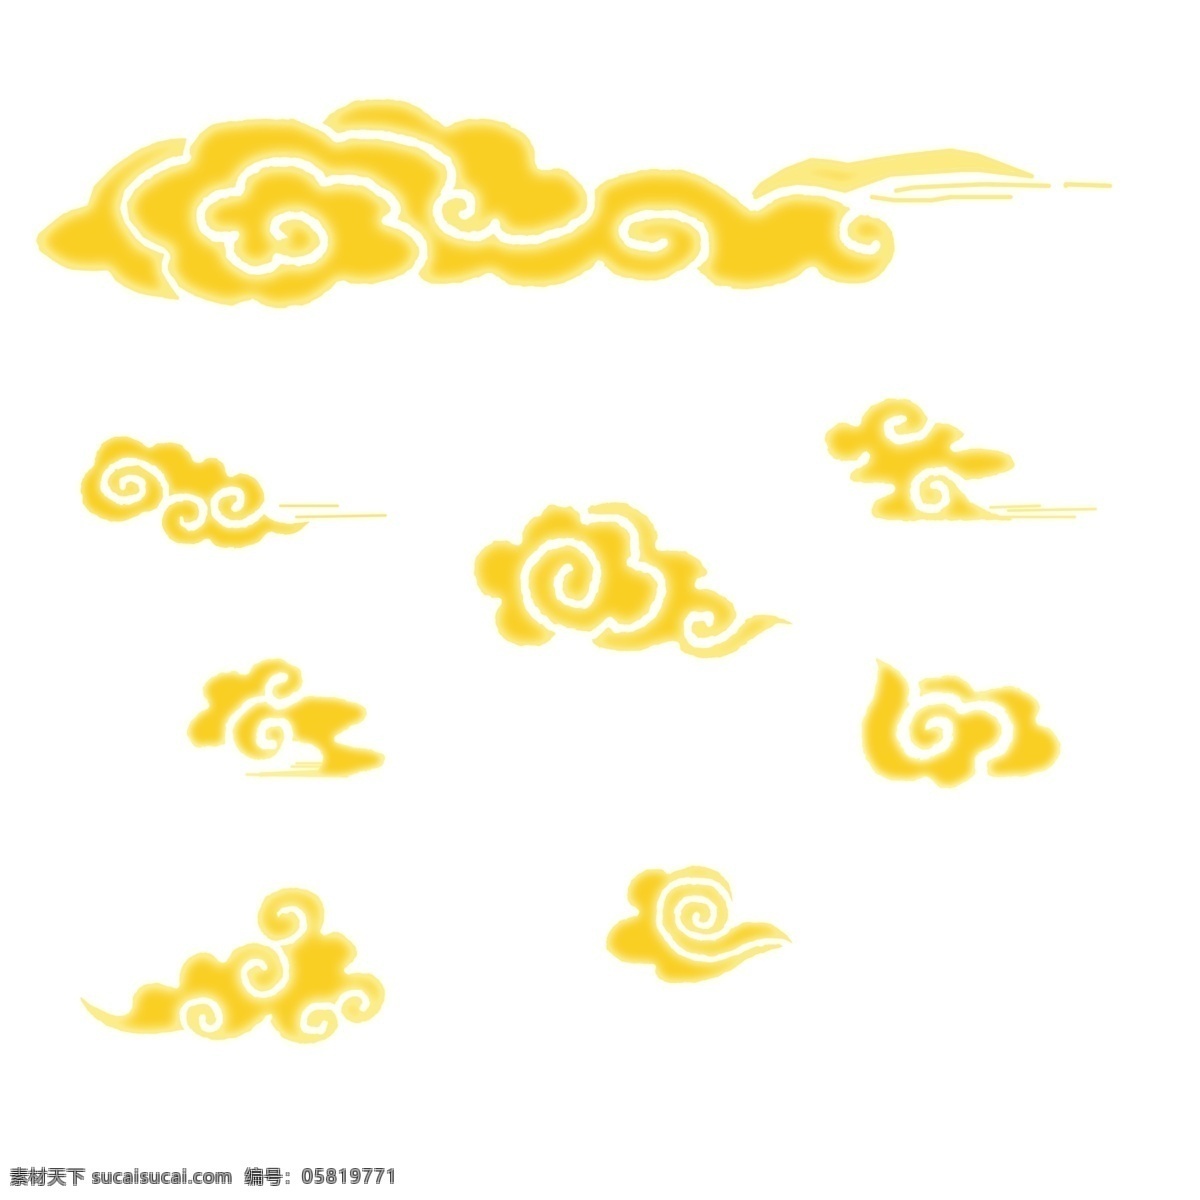 黄色 黄色祥云 古典 发光 祥云 云朵 七彩 神圣 海浪 图案